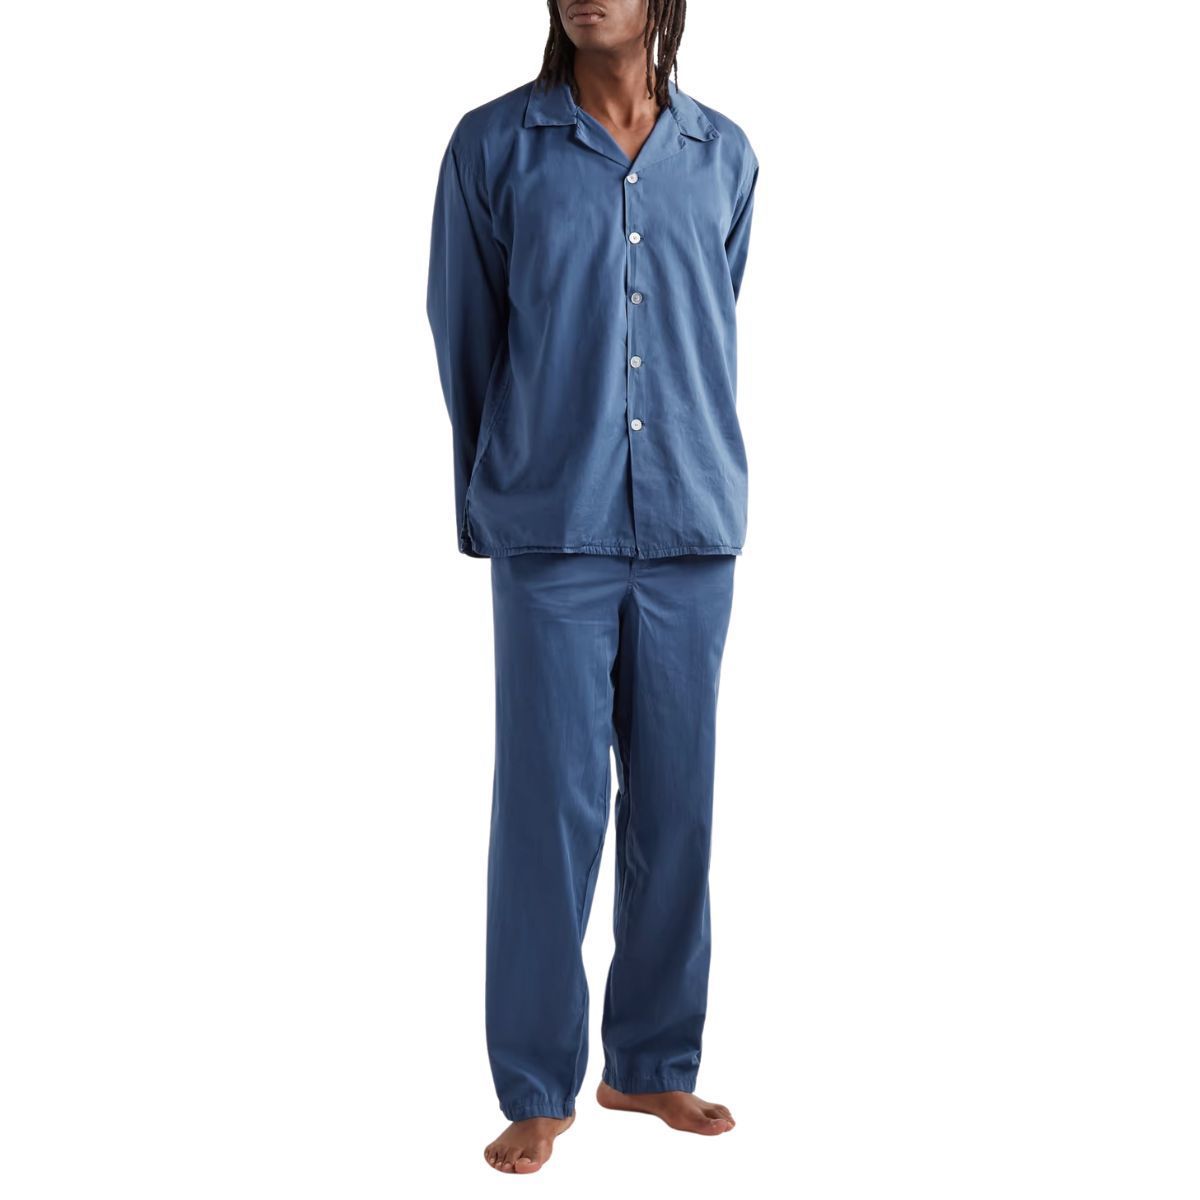 Genuwin Mens Cotton Pyjamas PJ Set Soft Nightwear Long Sleeve Top & Bottom Fitted Sleepwear Loungewear 